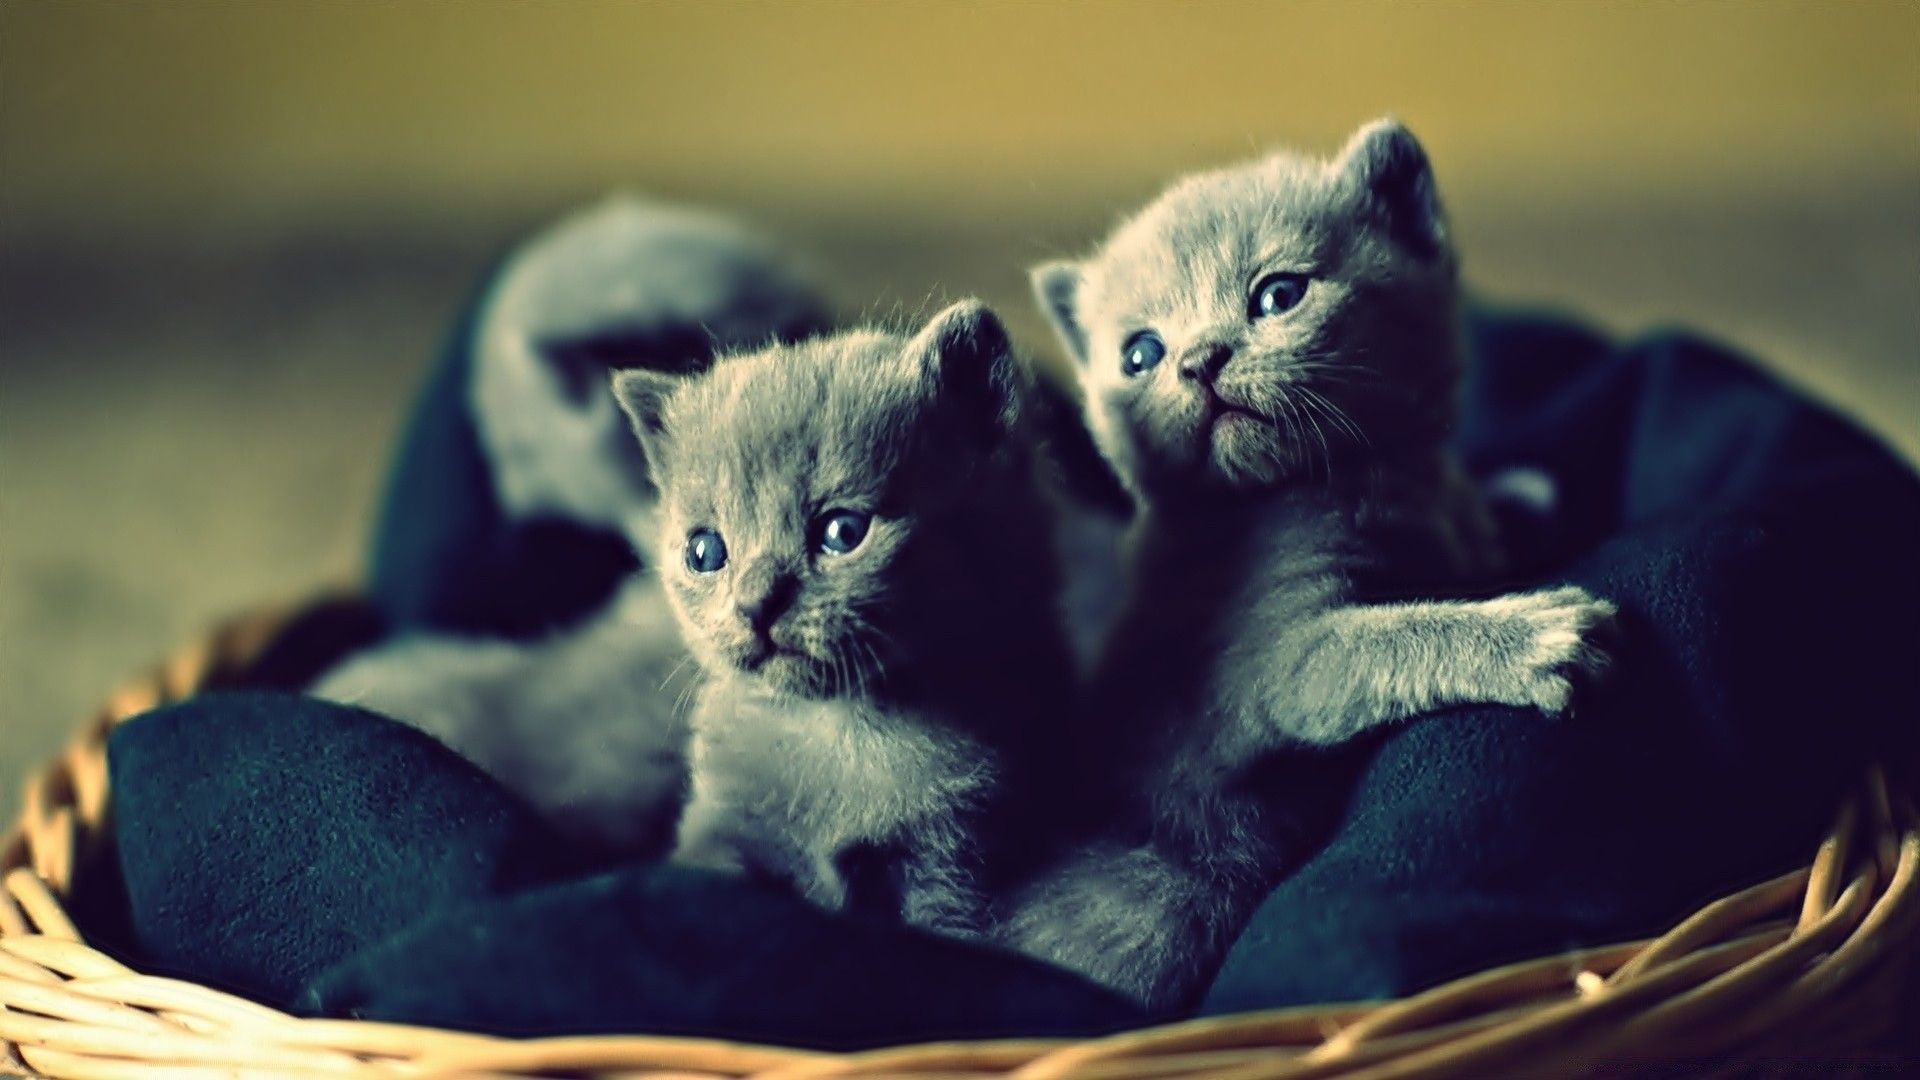 Wallpaper Kittens